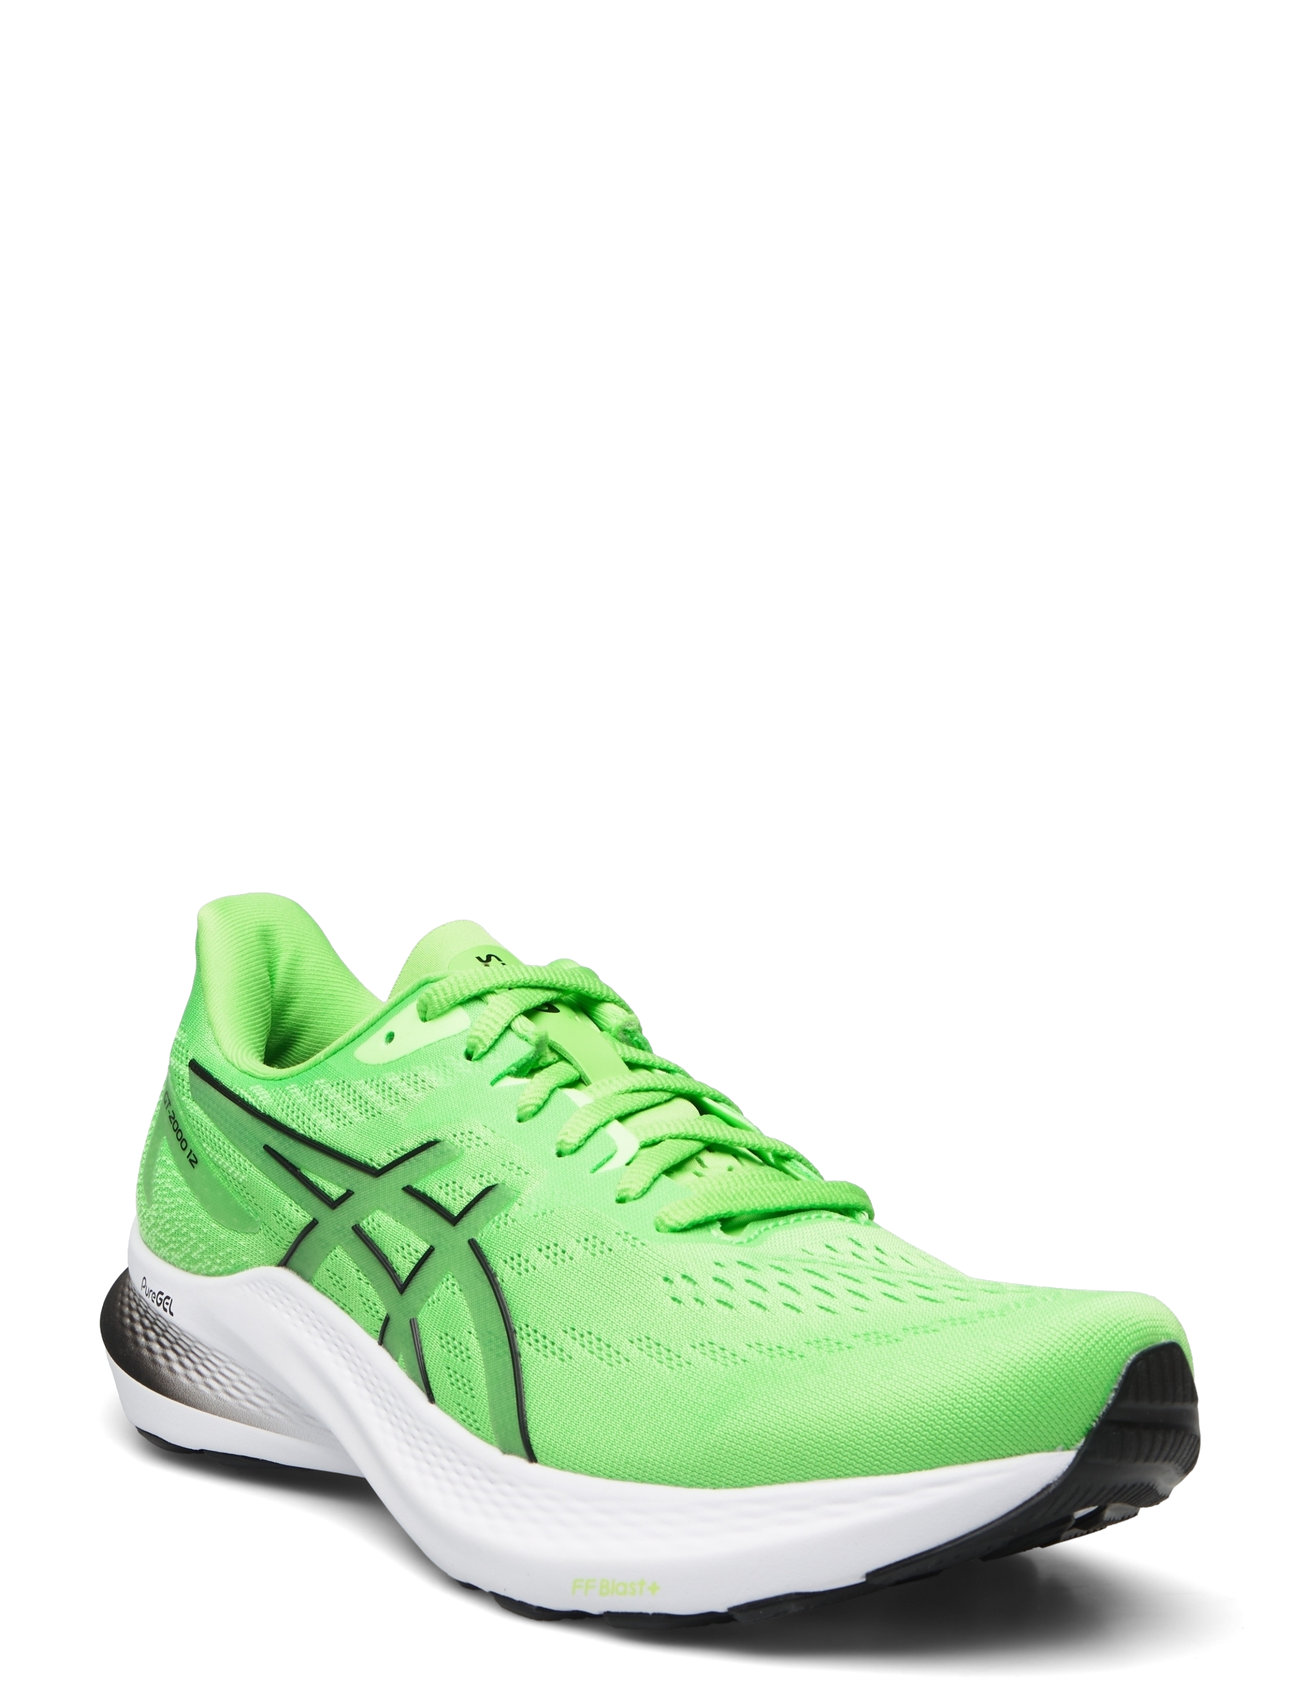 Gt-2000 12 Sport Sport Shoes Running Shoes Green Asics